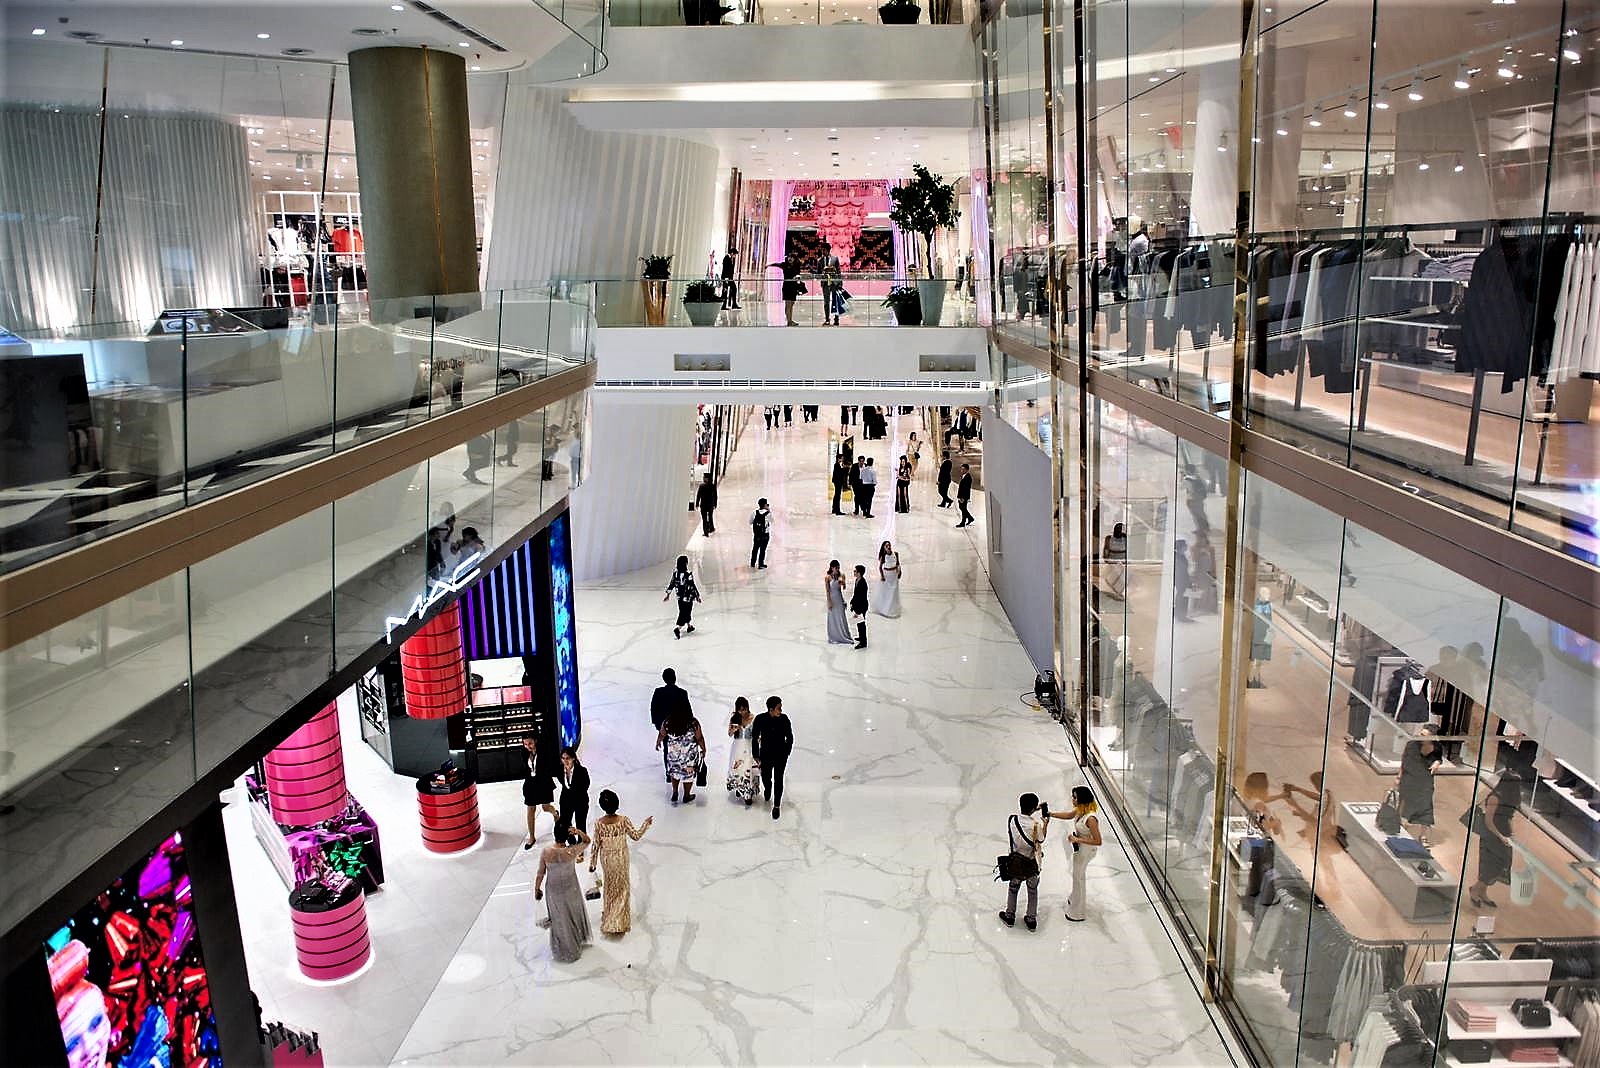 ICONSIAM Shopping Mall Bangkok - Luxury shopping center